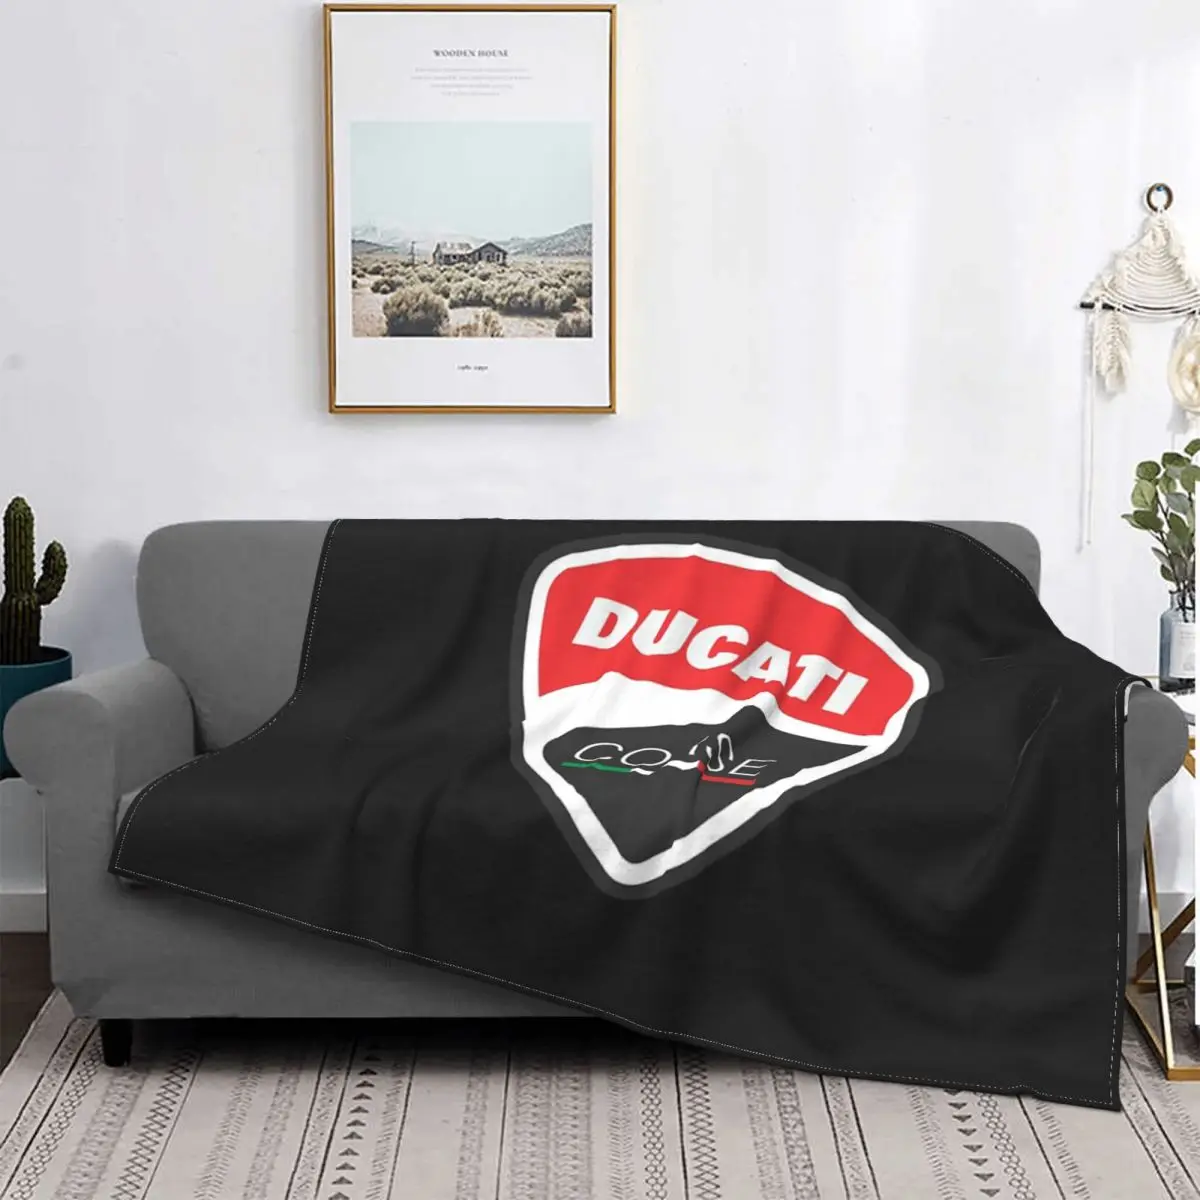 

Плед Ducati коричника, покрывало для кровати, простыня в шотландскую клетку, одеяло, летнее покрывало